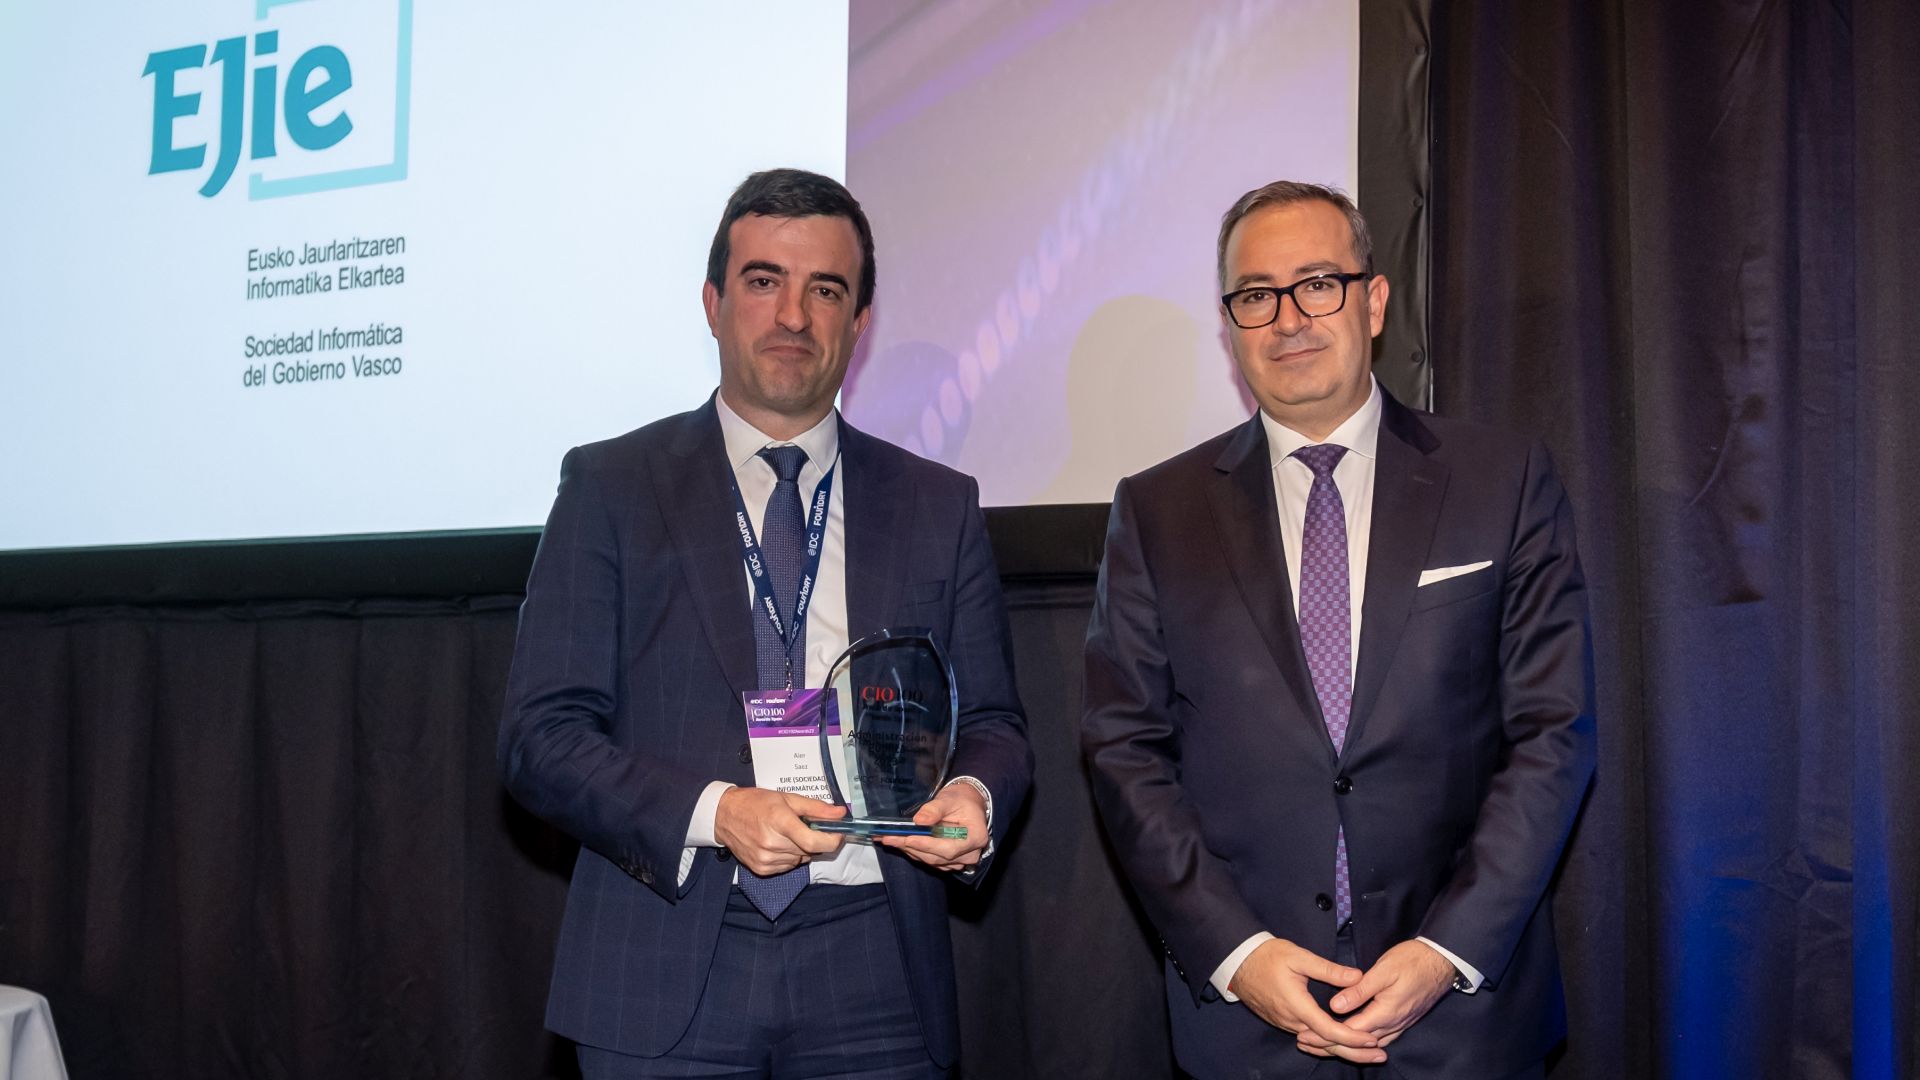 Asier Sáez de Vicuña, director general del EJIE, ha recogido el premio de manos de José Antonio Cano, managing consulting de IDC